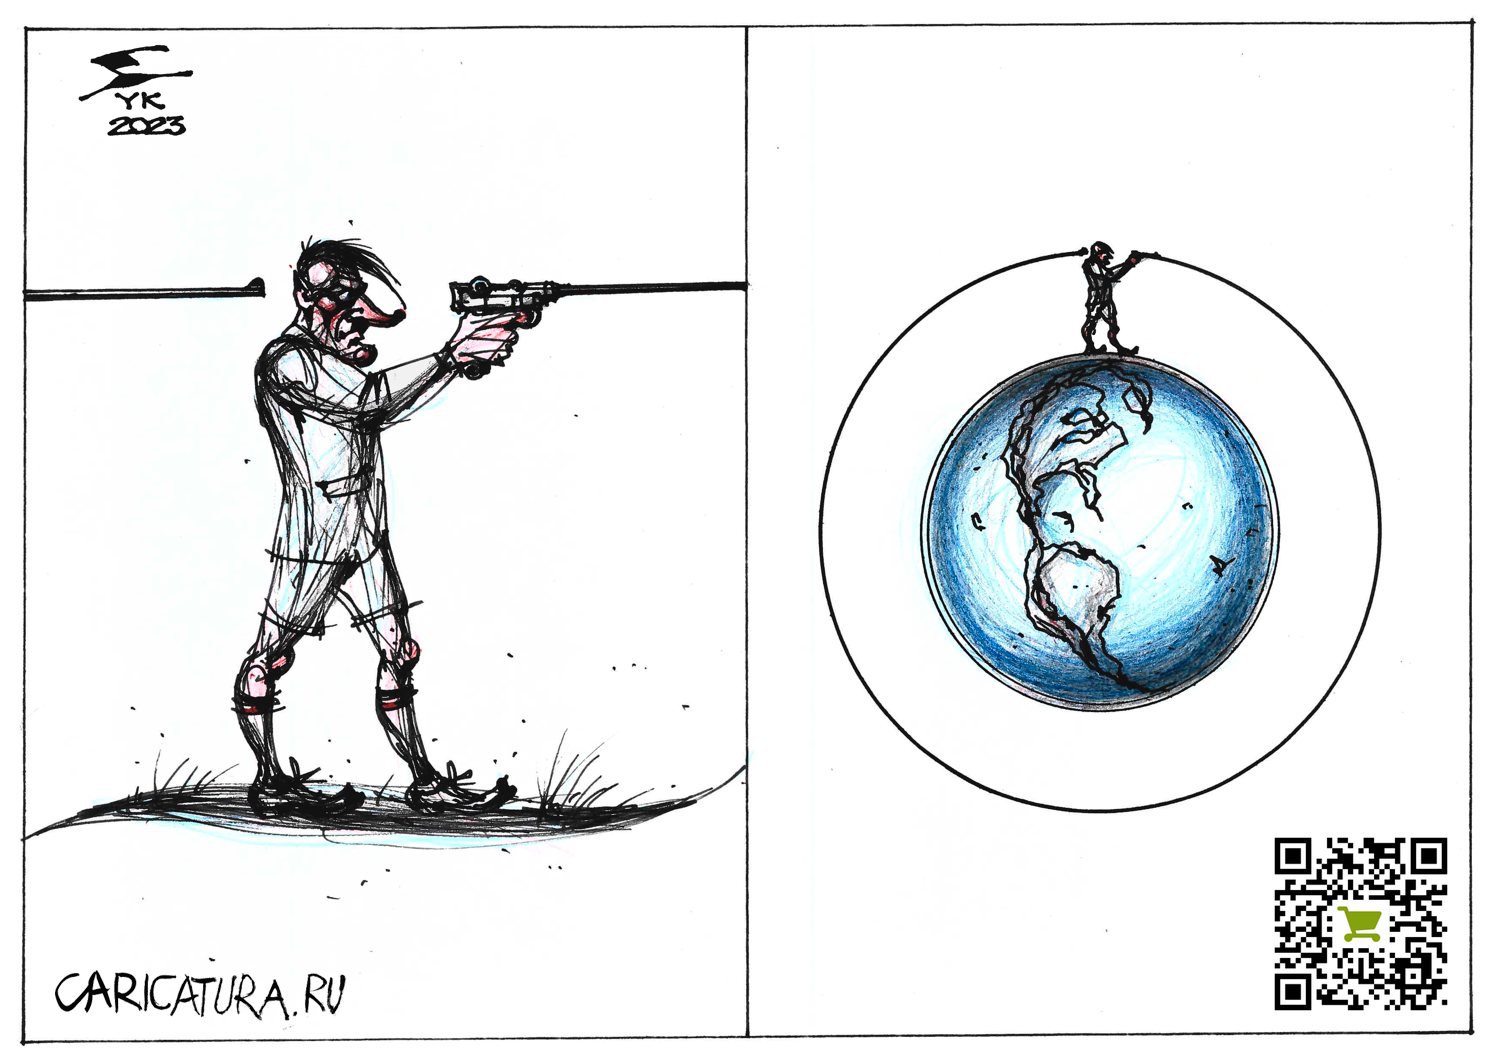 Карикатура "Про ефрейтора, который хотел править миром", Юрий Косарев